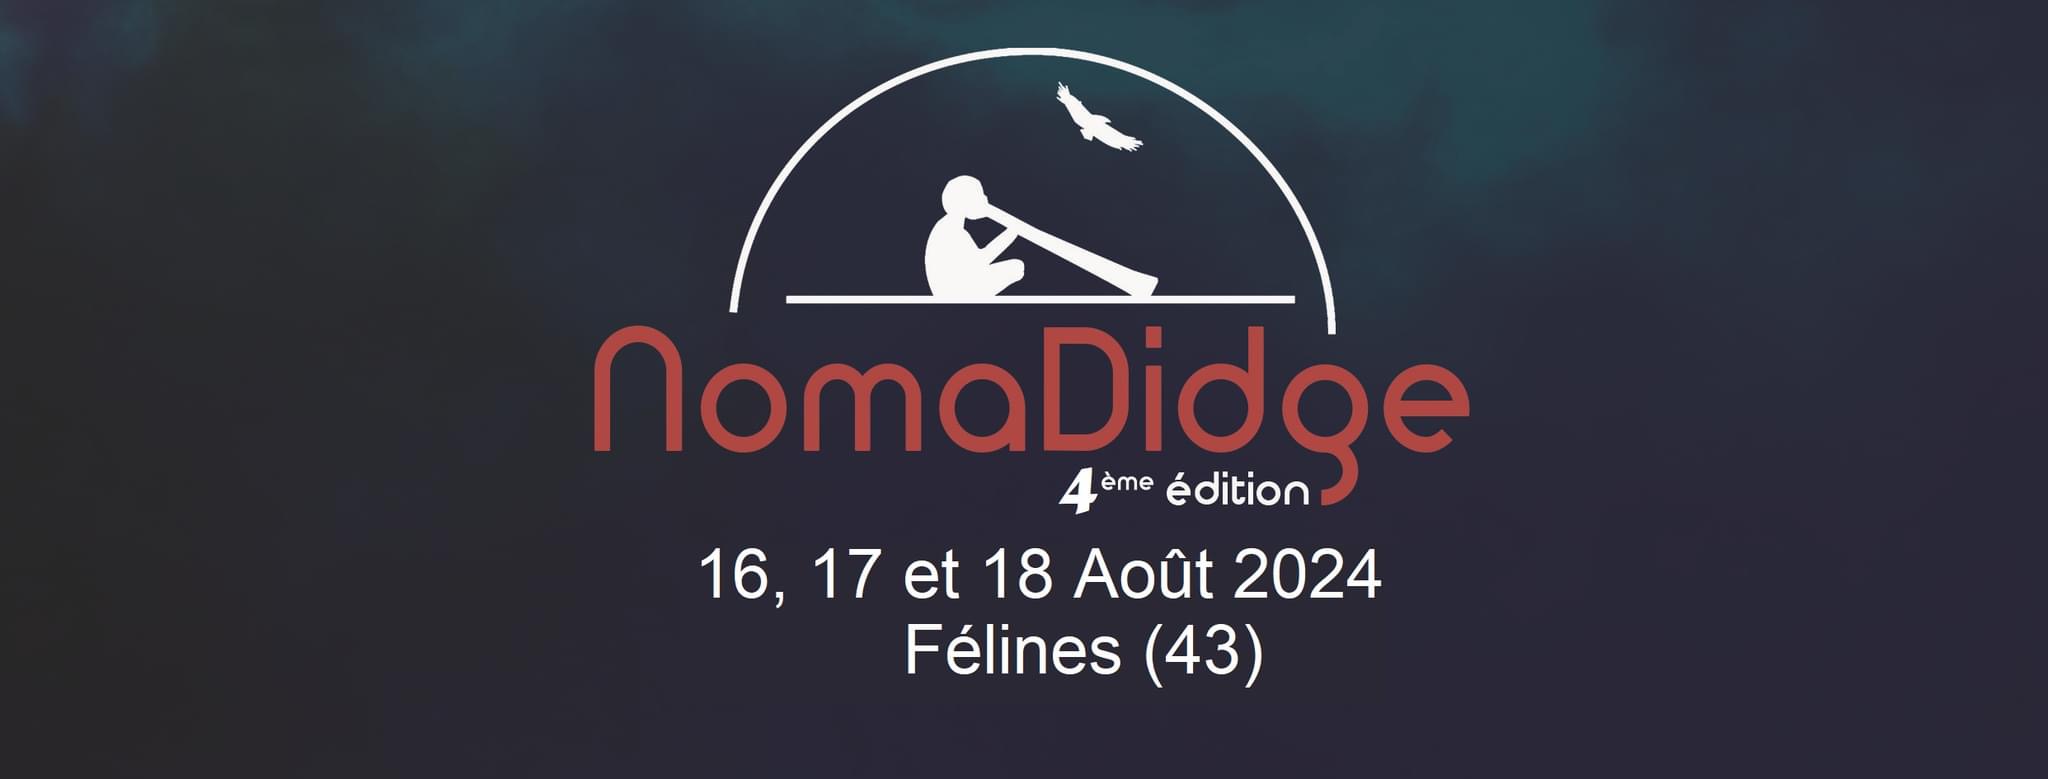 Bannière du festival Nomadidge